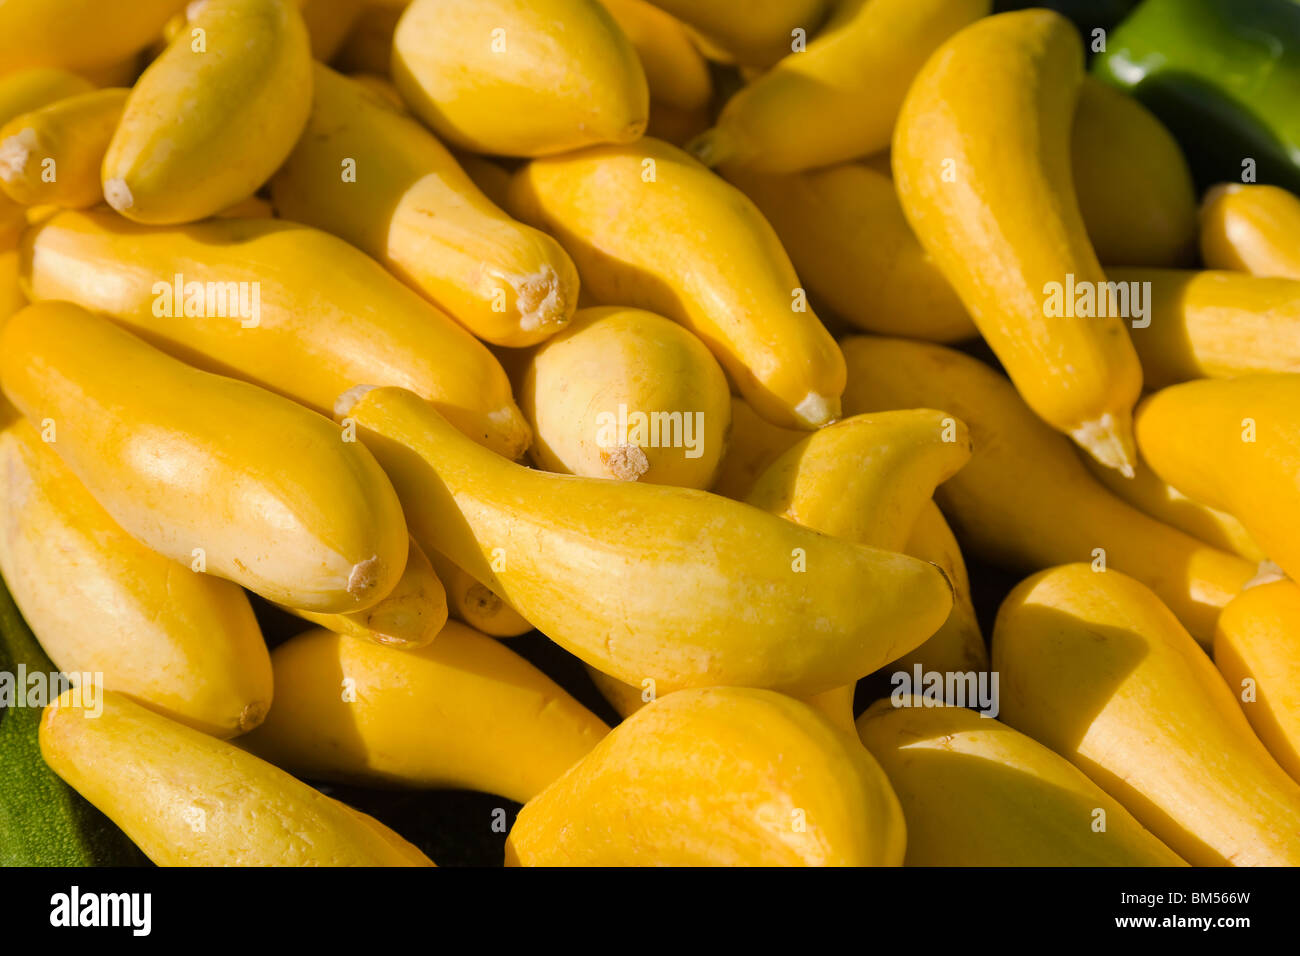 Zucca gialla al mercato degli agricoltori, close up Foto Stock